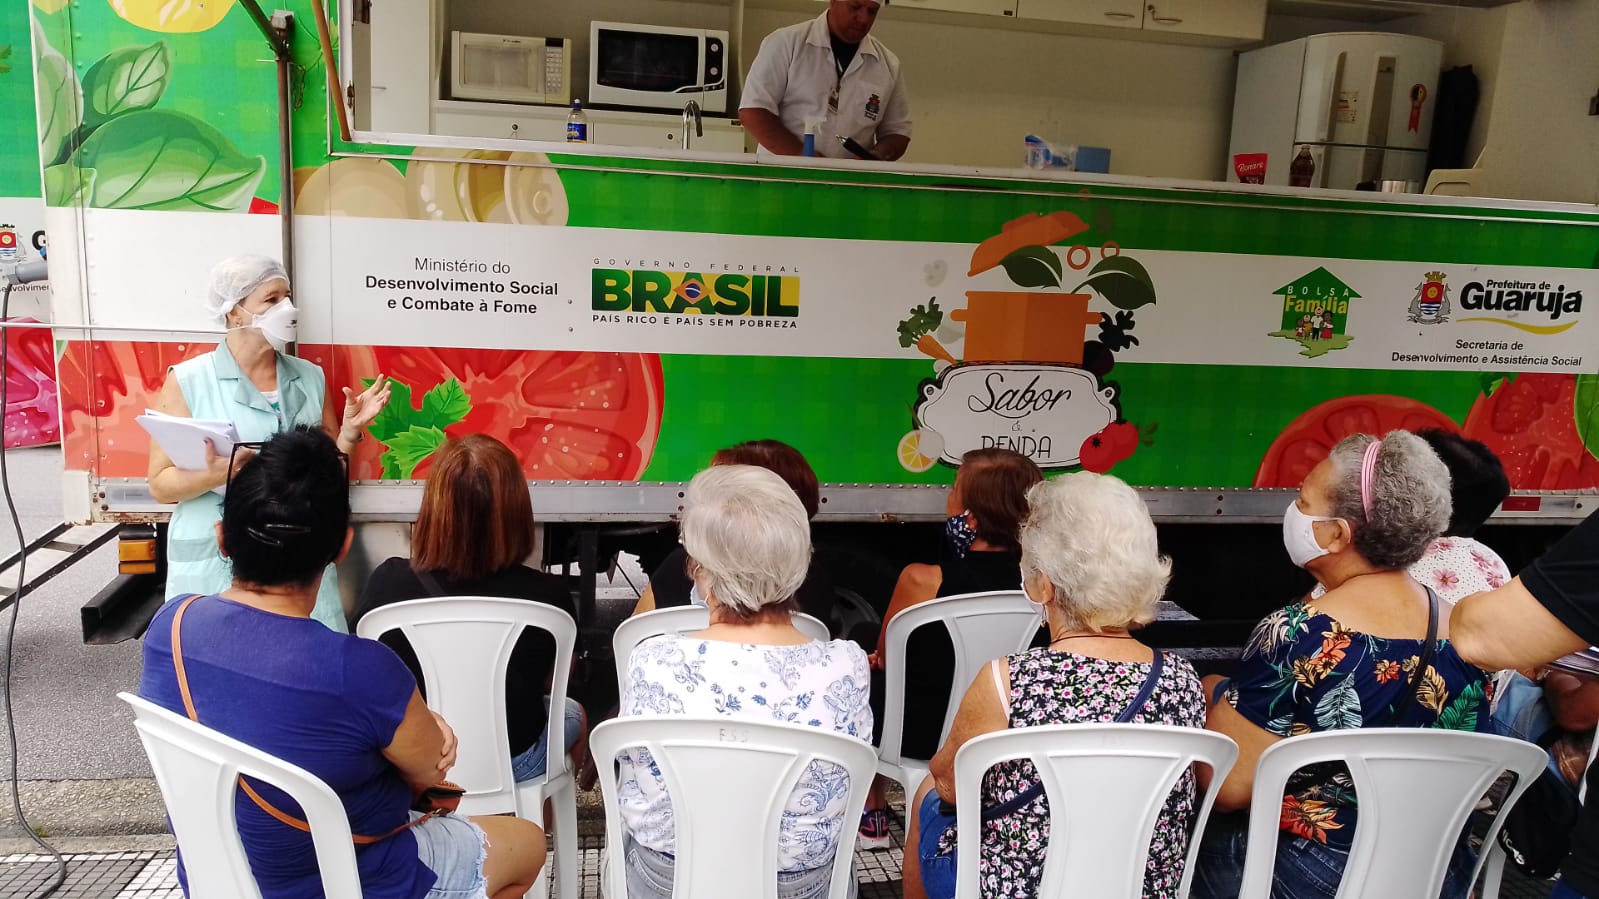 Caminhão Sabor e Renda leva bons hábitos alimentares a mais de 2 mil pessoas